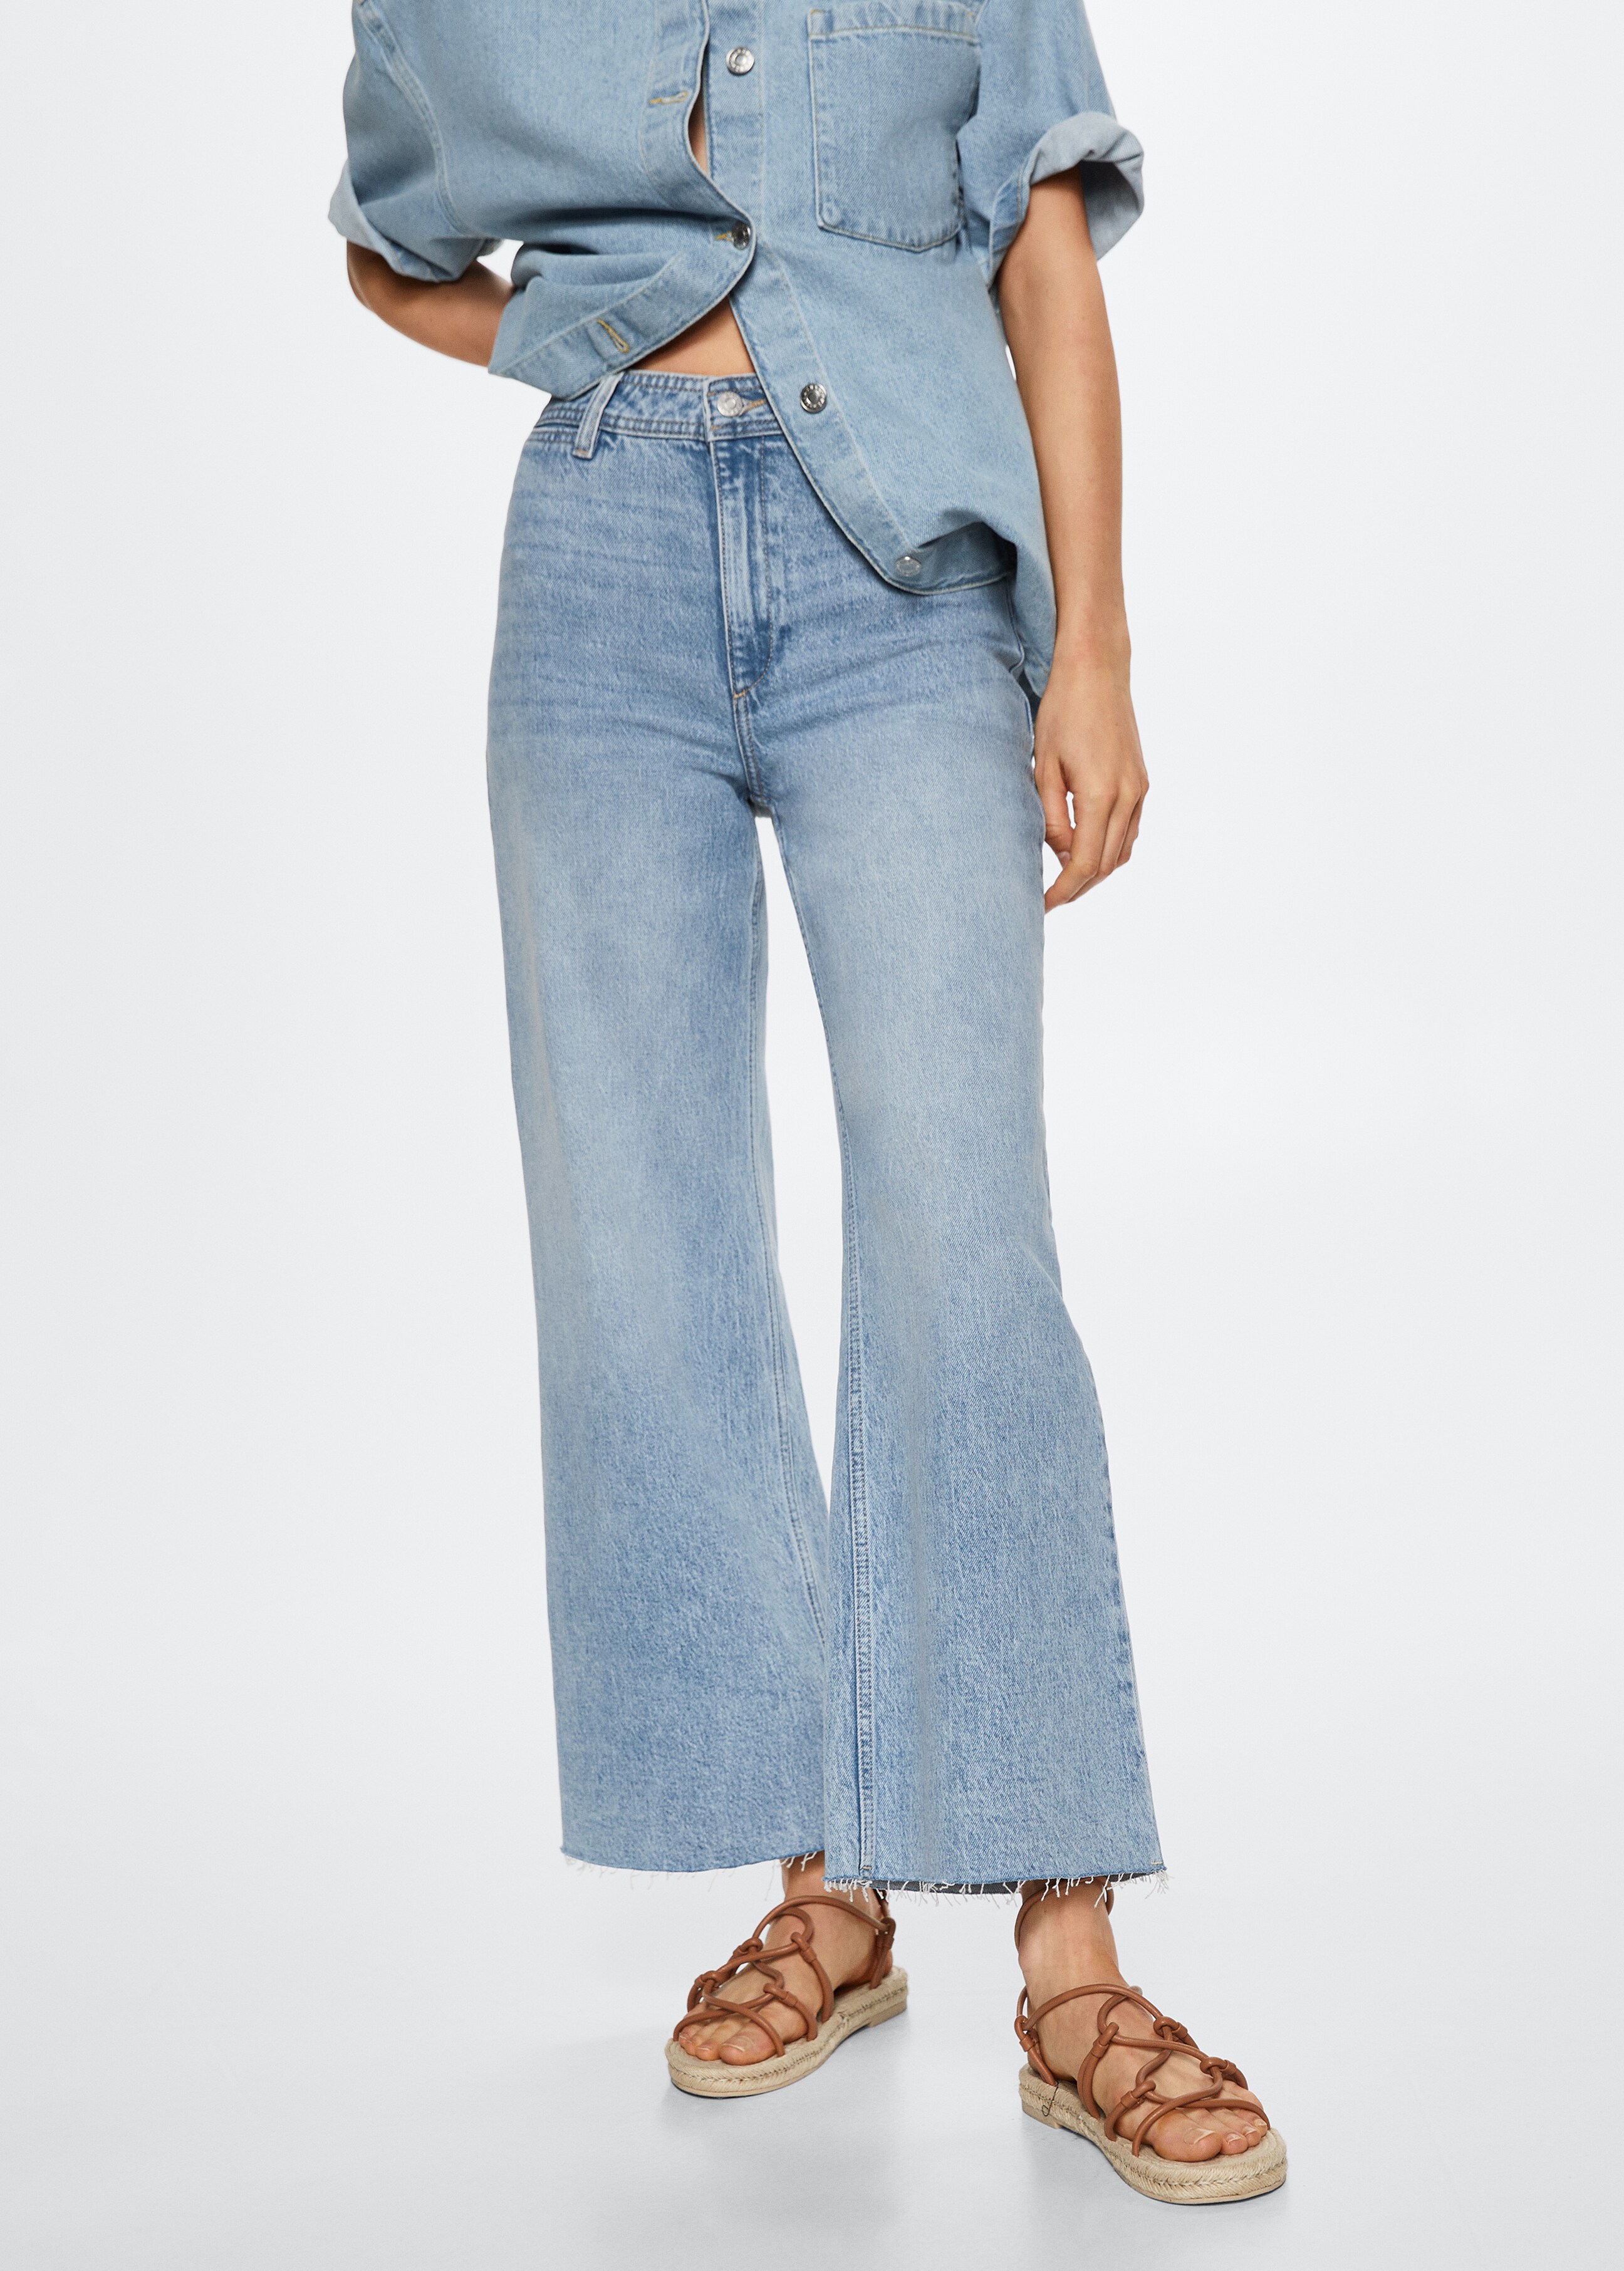 Jeans culotte tiro alto - Plano medio